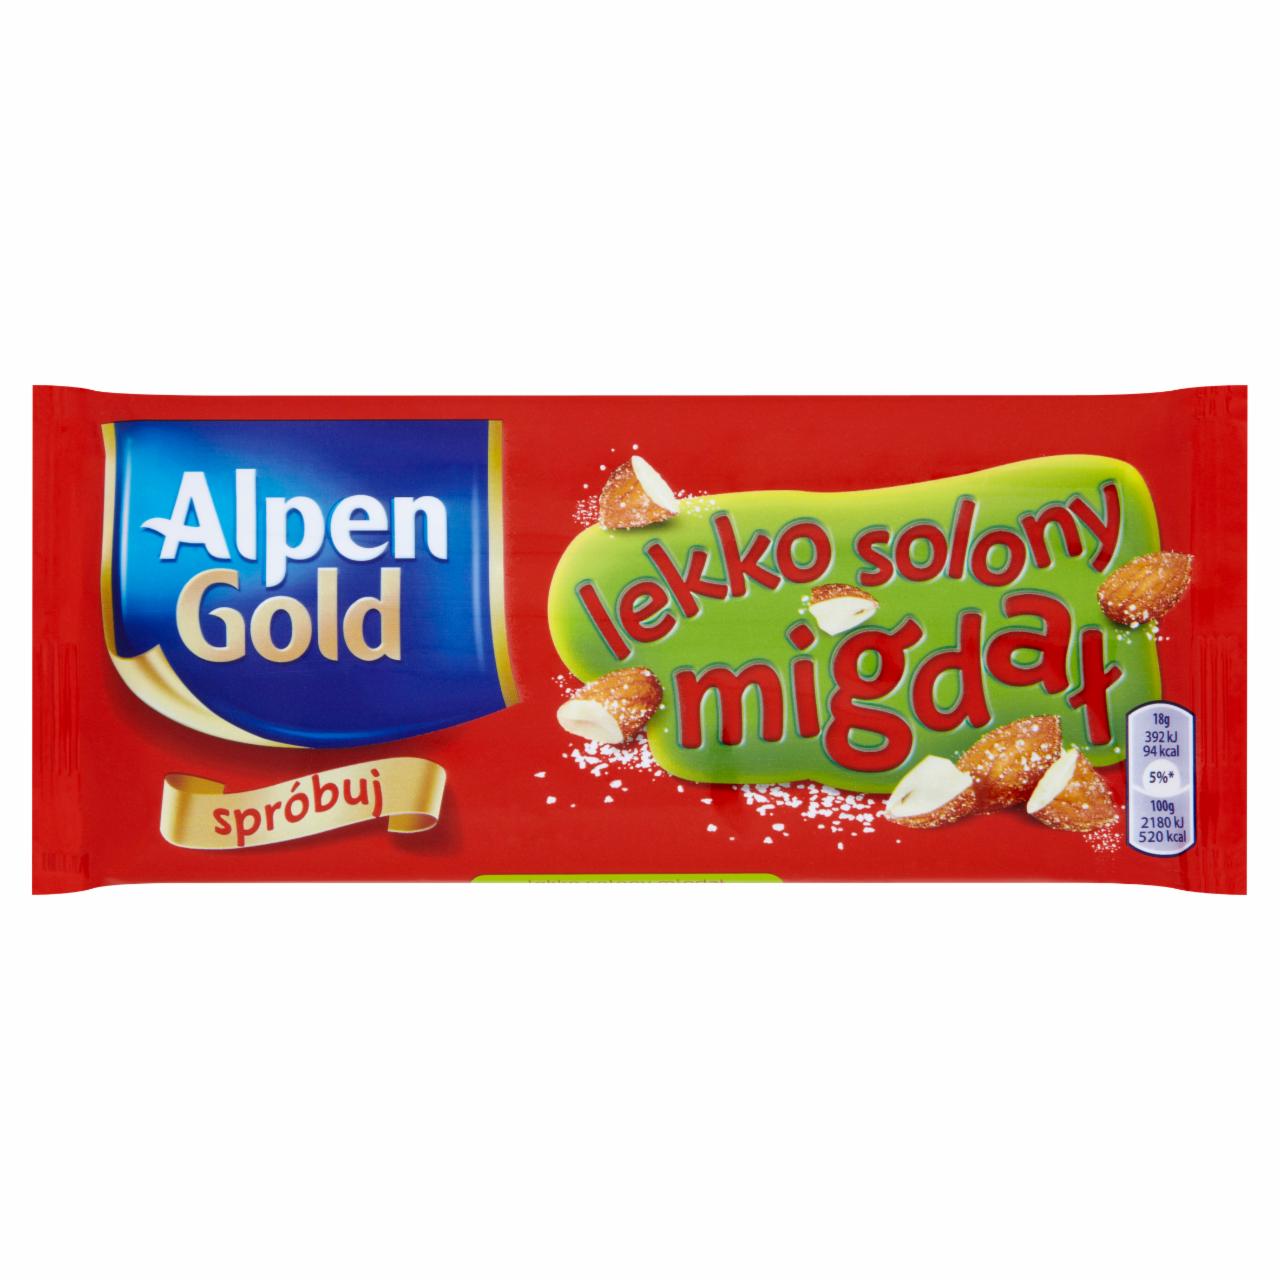 Zdjęcia - Alpen Gold Lekko solony migdał Czekolada 90 g